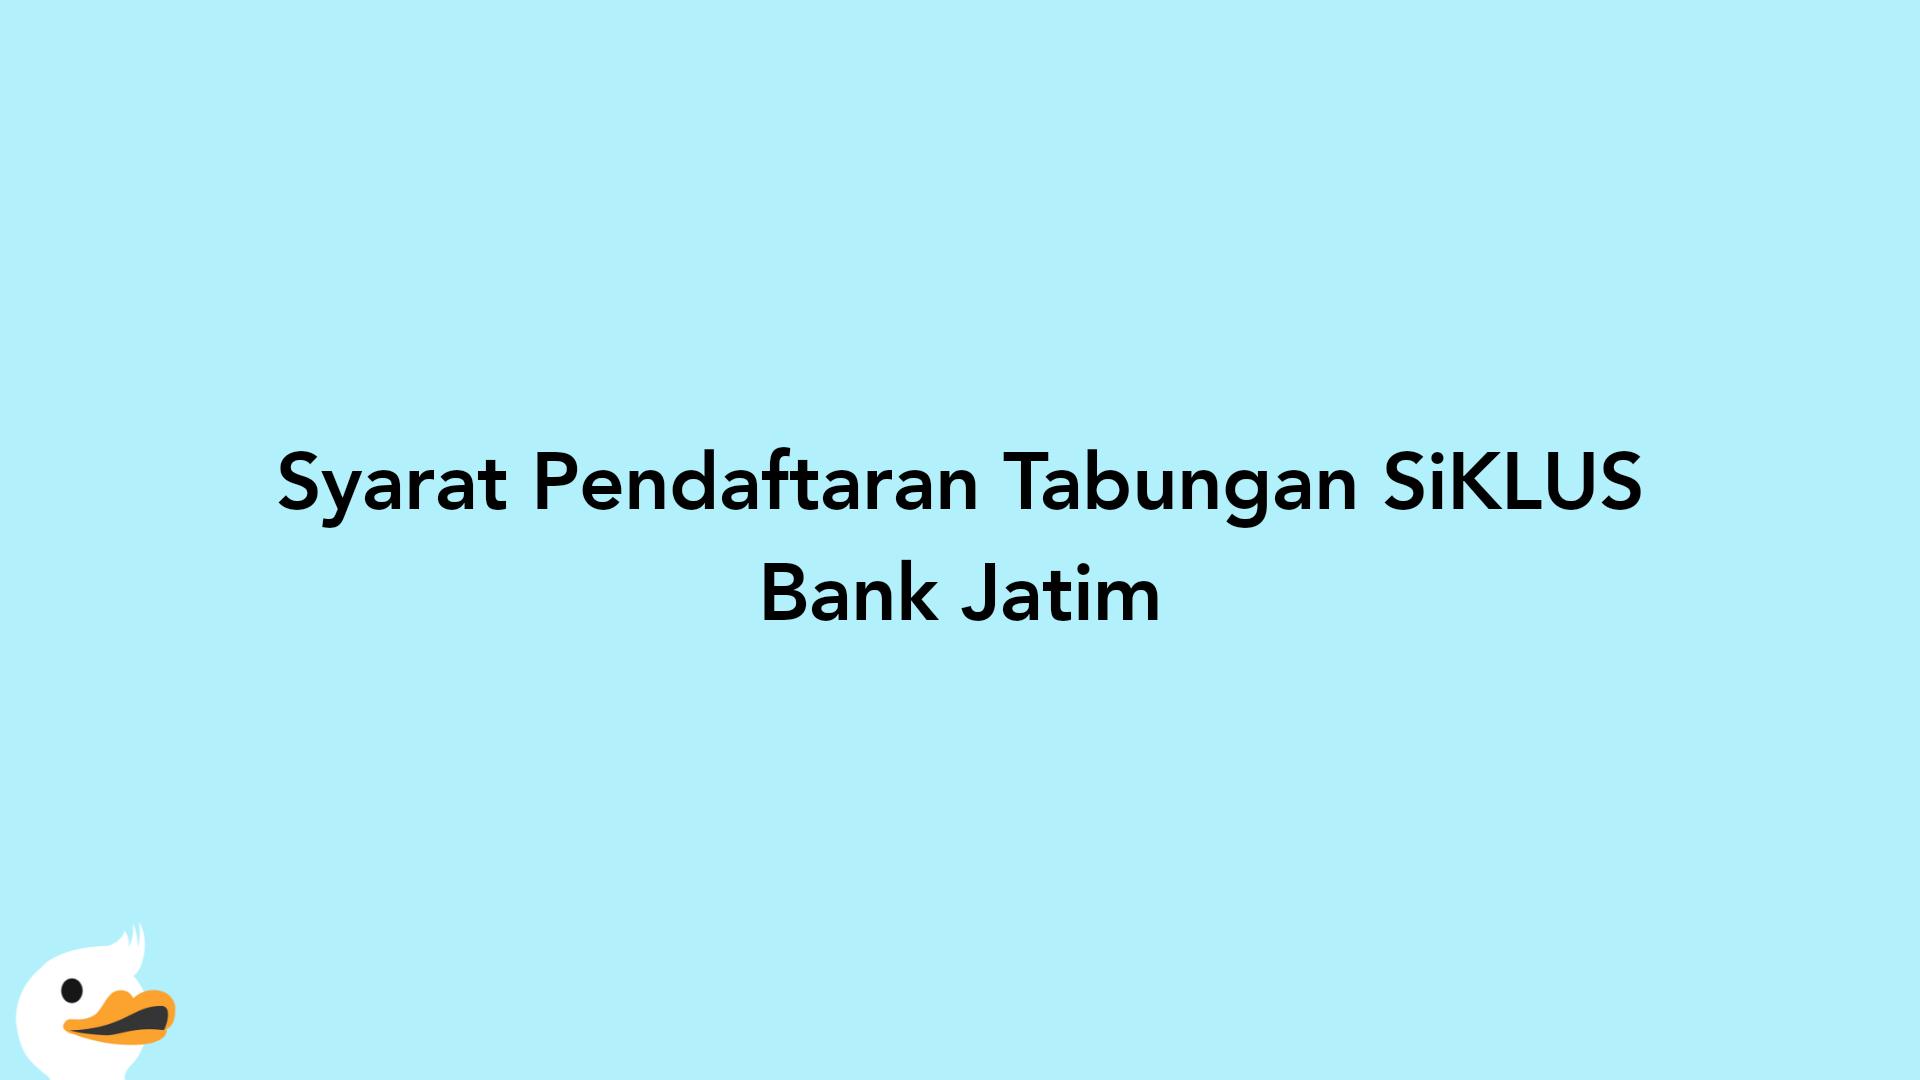 Syarat Pendaftaran Tabungan SiKLUS Bank Jatim